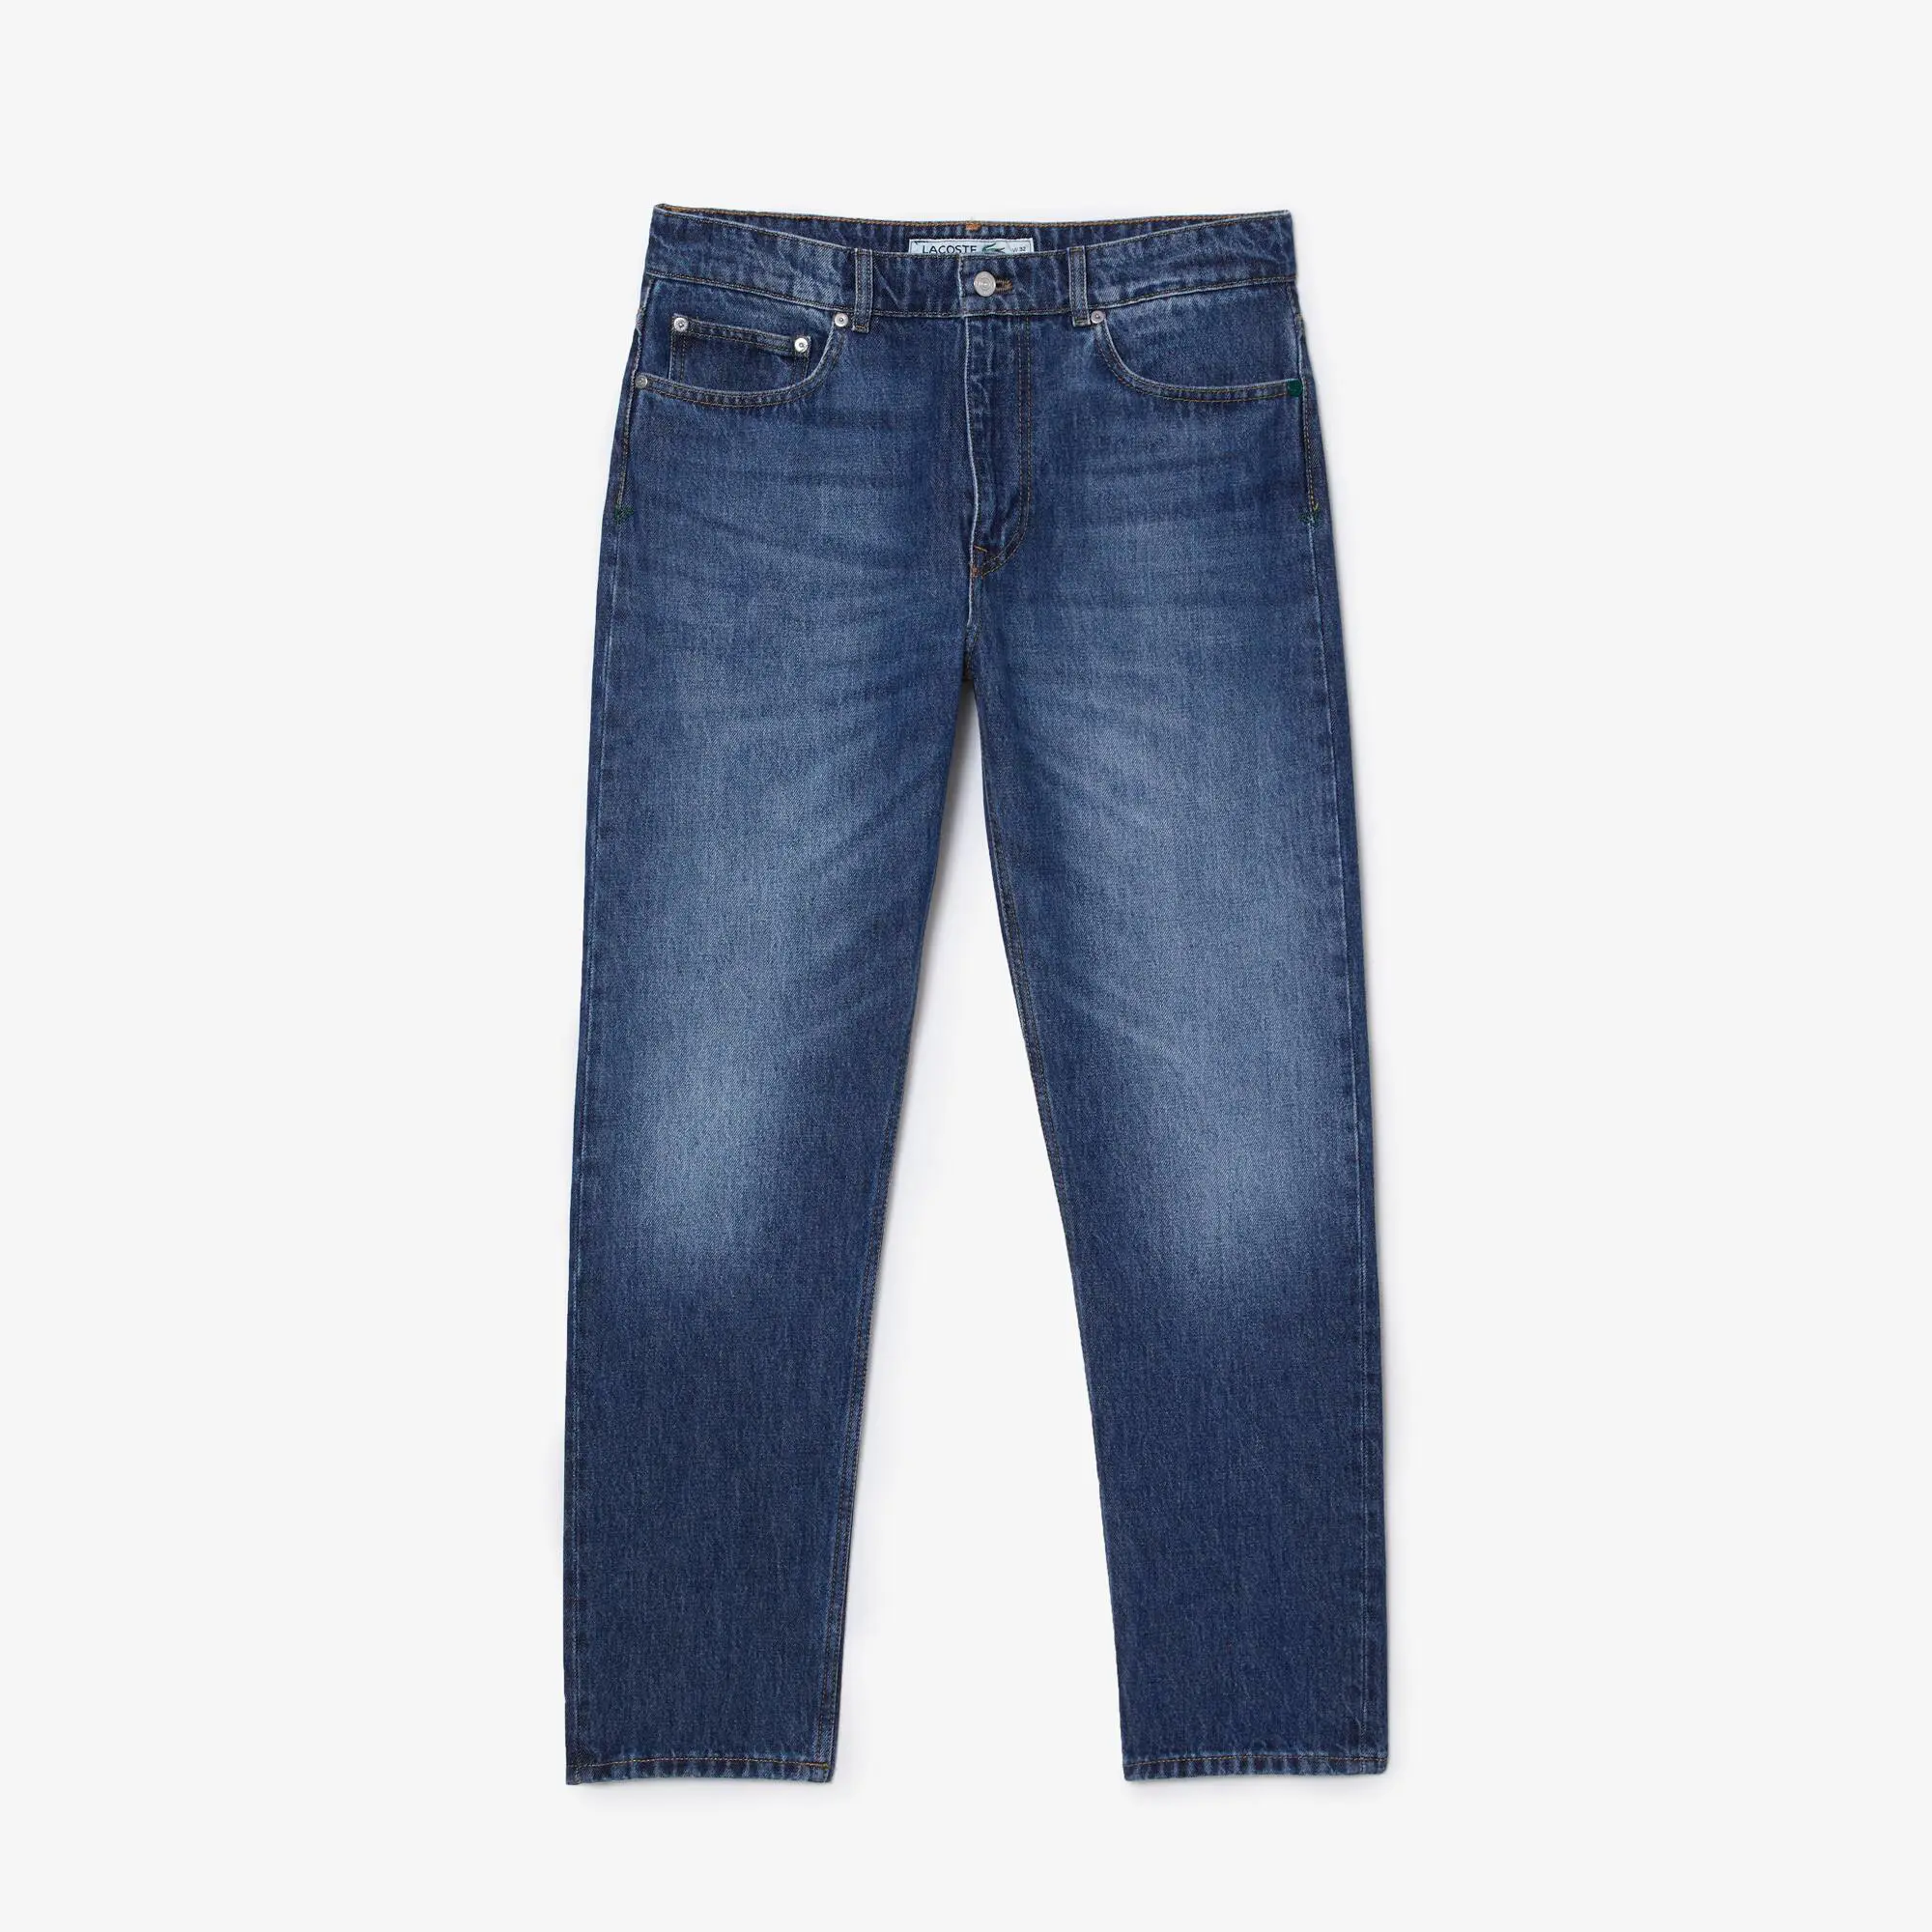 Lacoste Men's Lacoste Denim Cotton Five-Pocket Jeans. 2